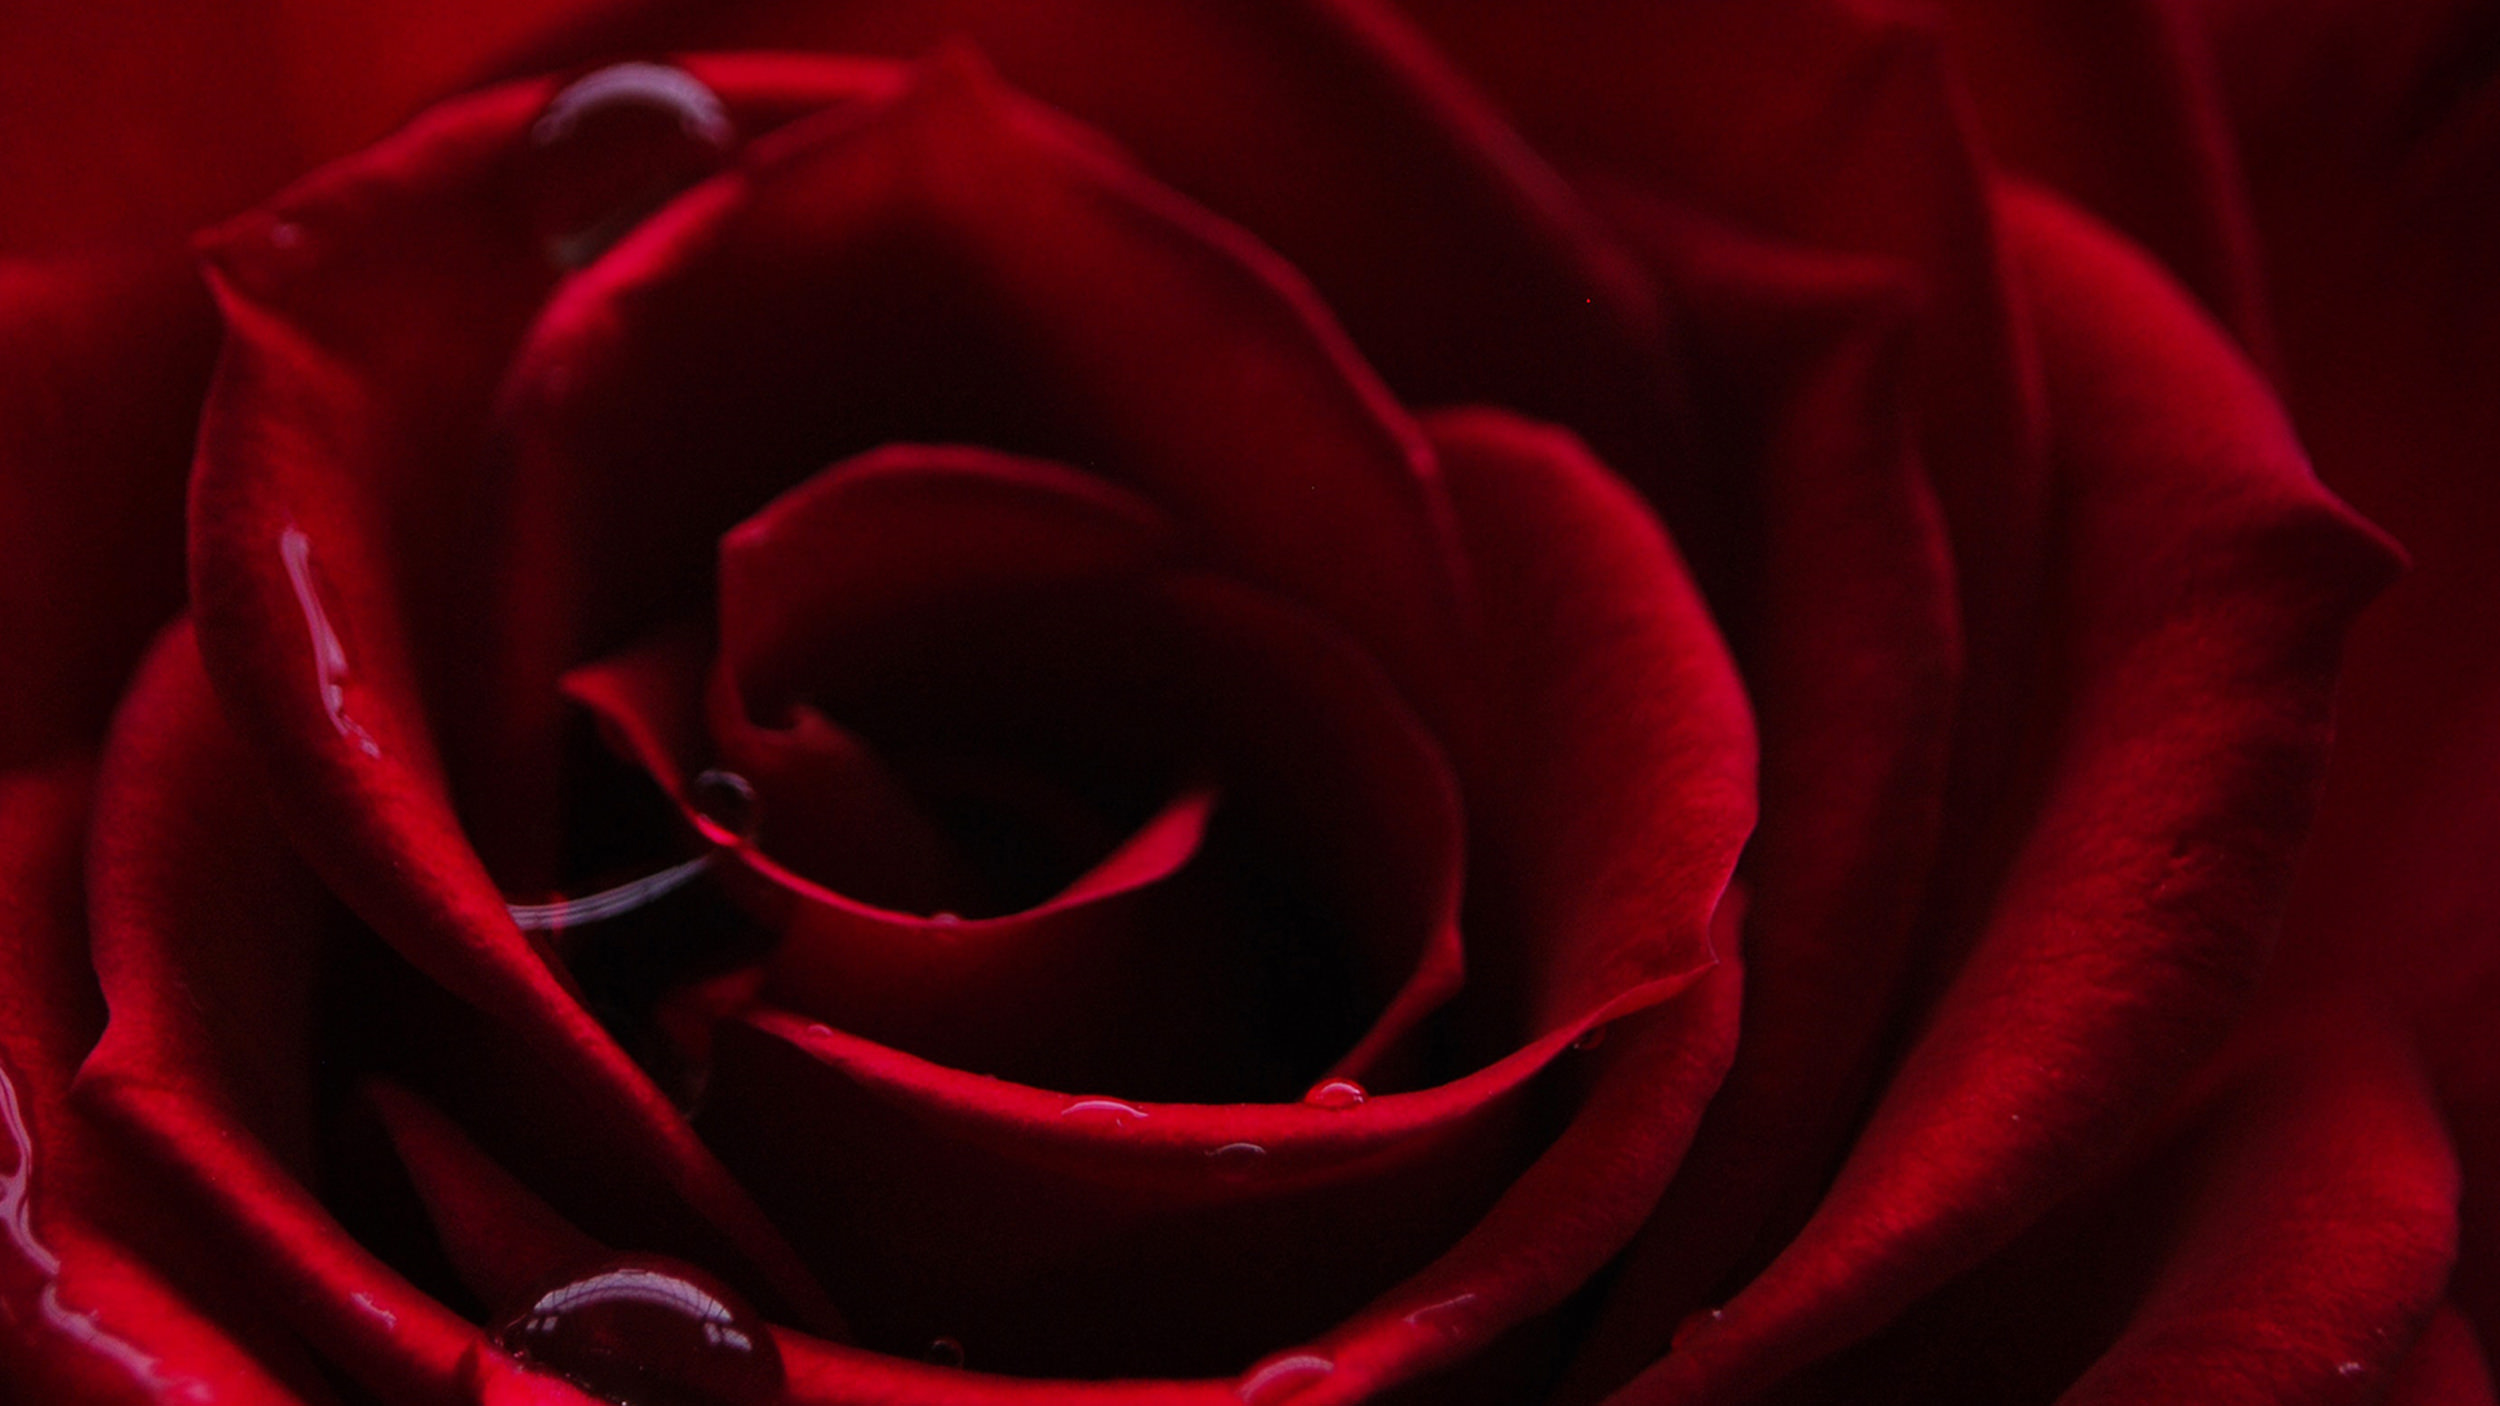 Tout savoir sur la rose : histoire, symbolique et couleurs